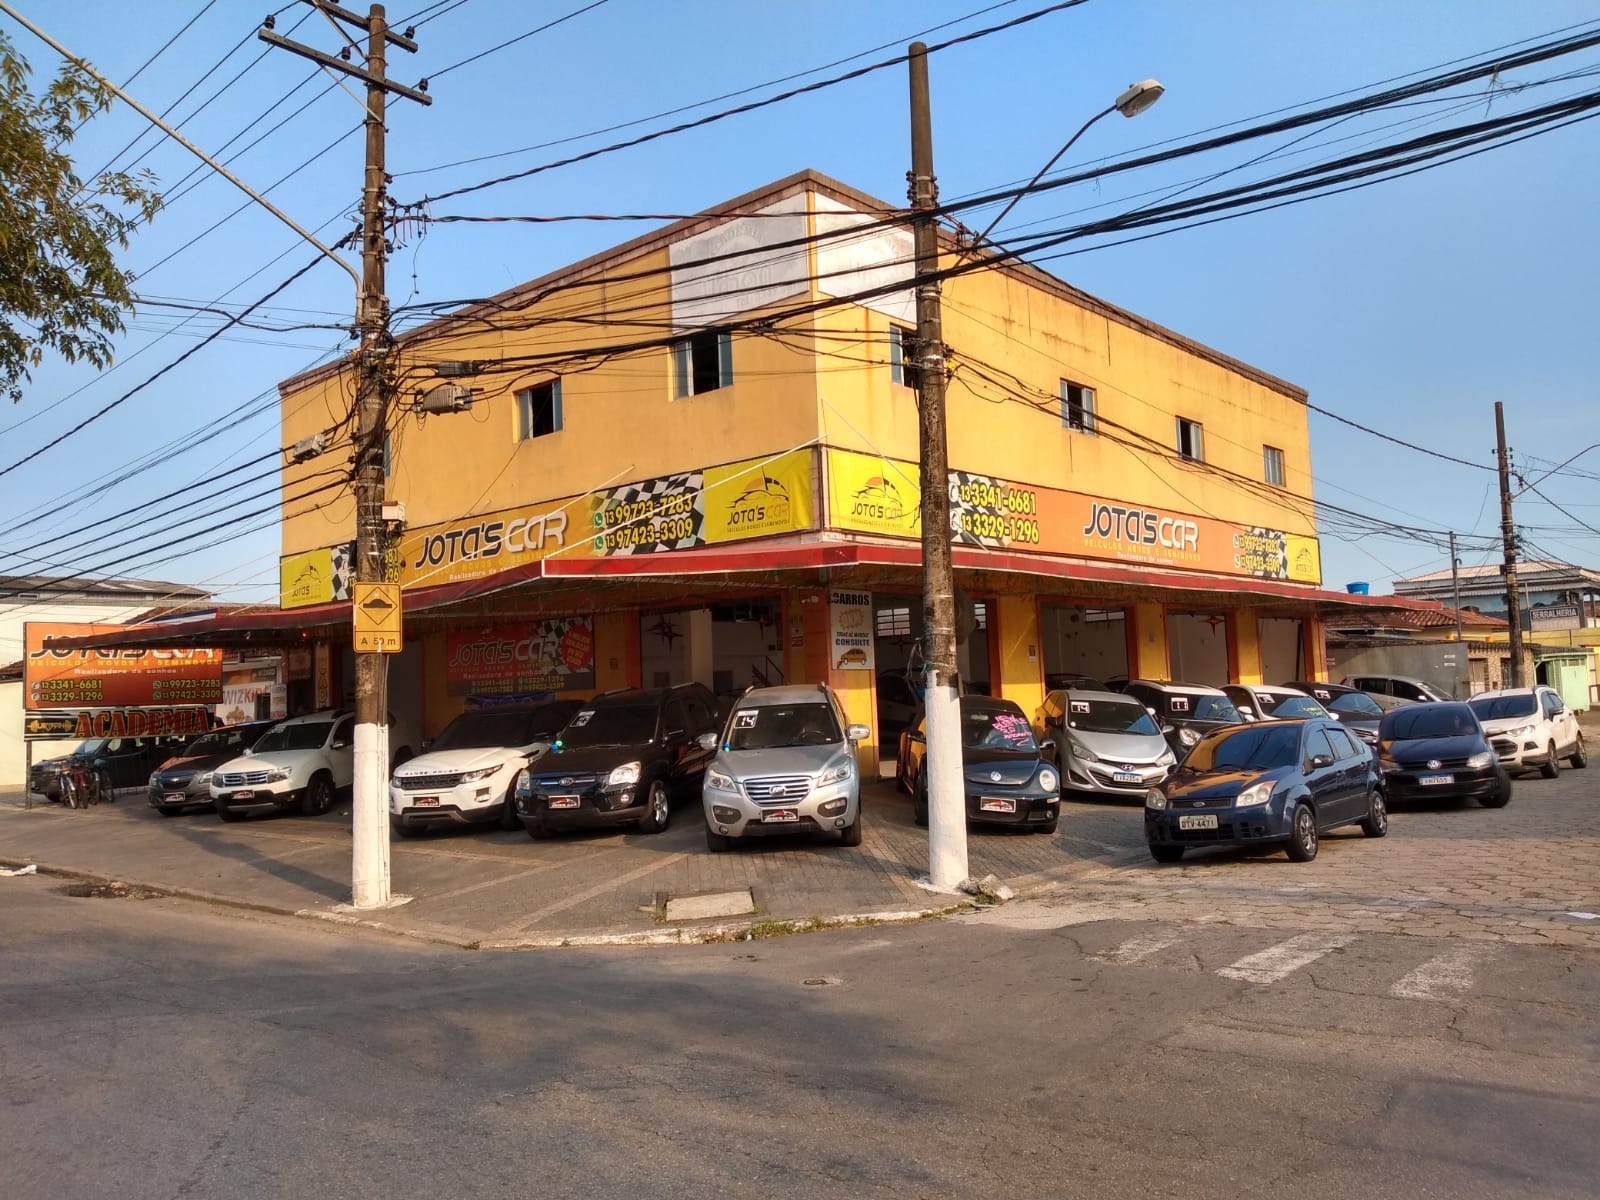 Fachada da loja Jota's Car Veiculos - Guarujá - SP